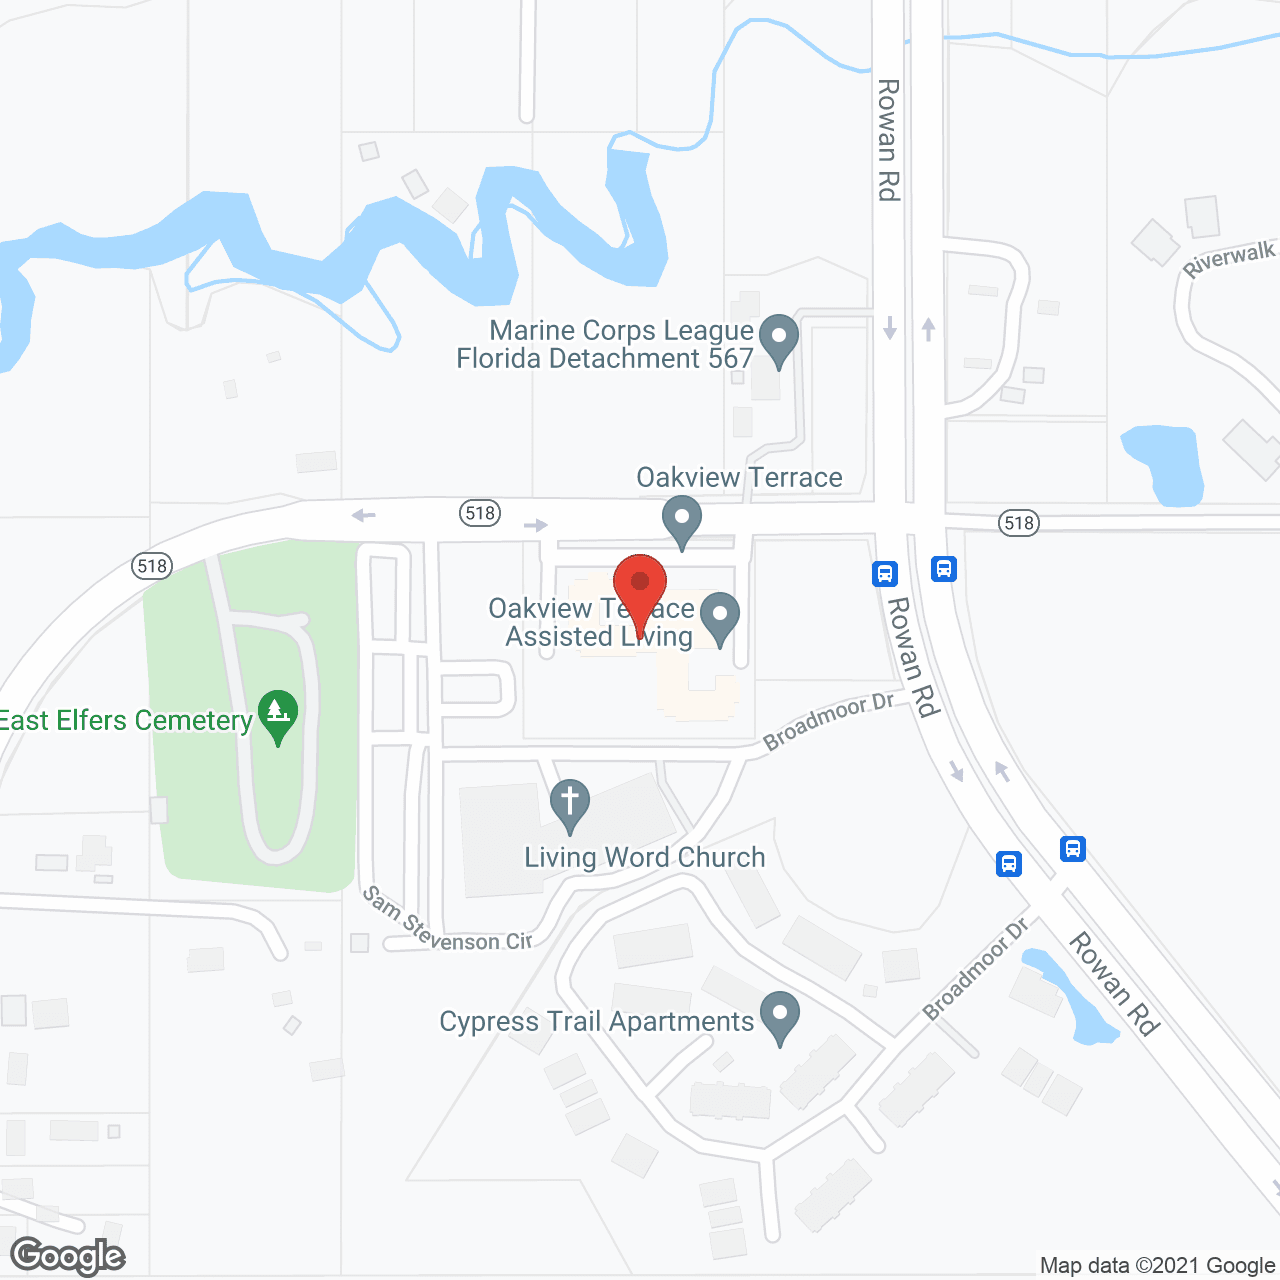 Oakview Terrace in google map